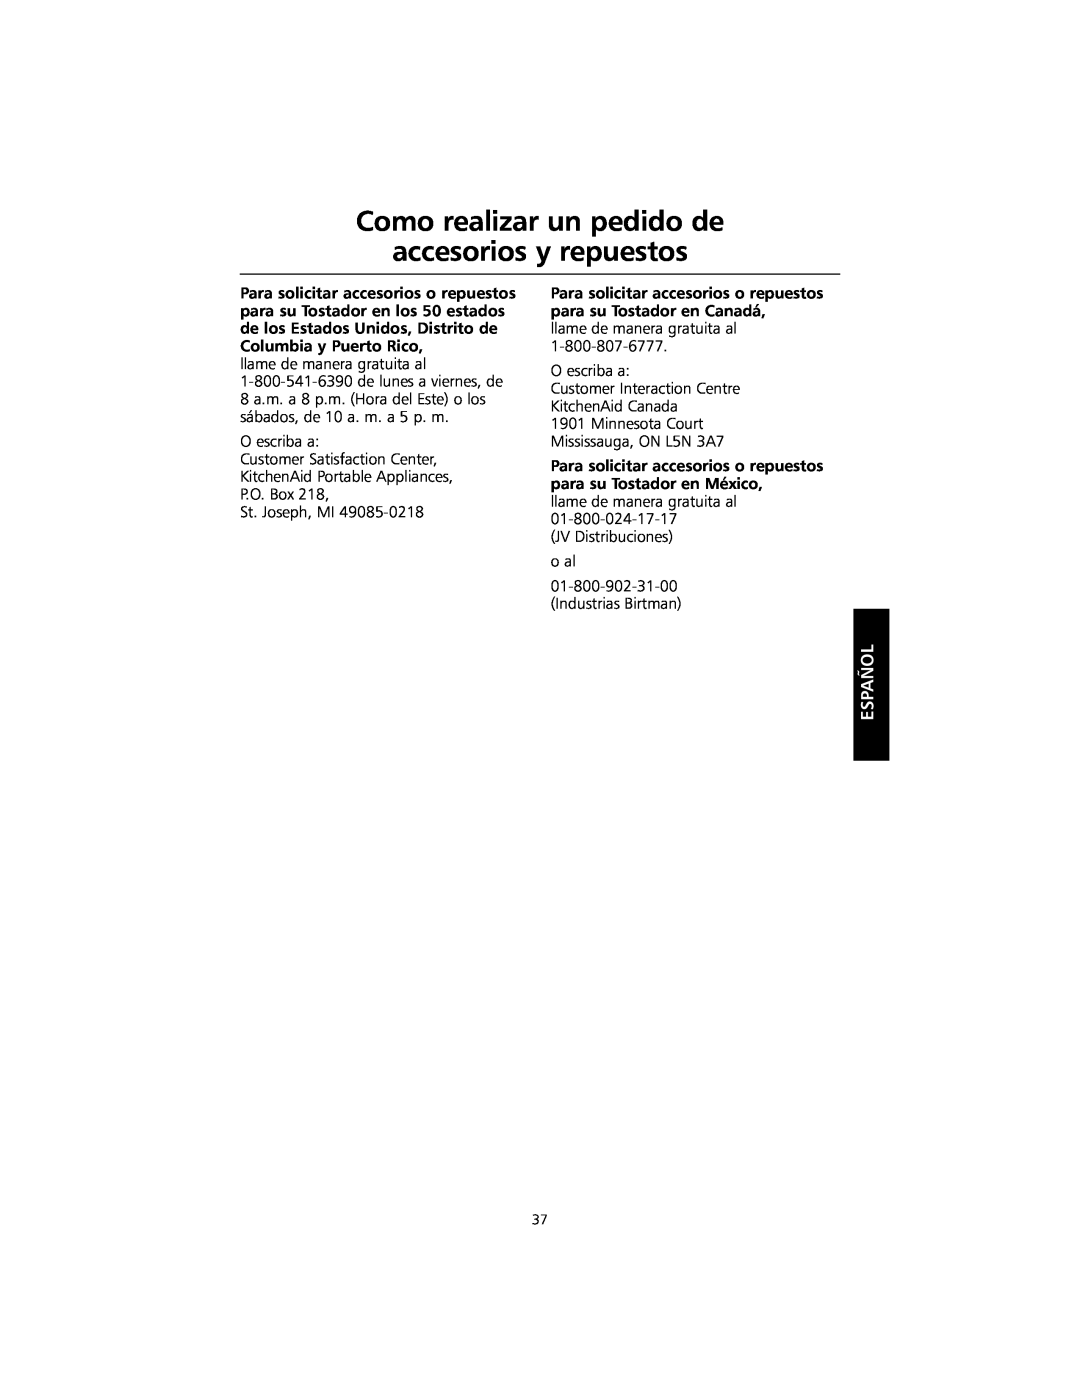 KitchenAid KMTT400 manual Como realizar un pedido de accesorios y repuestos, Español 